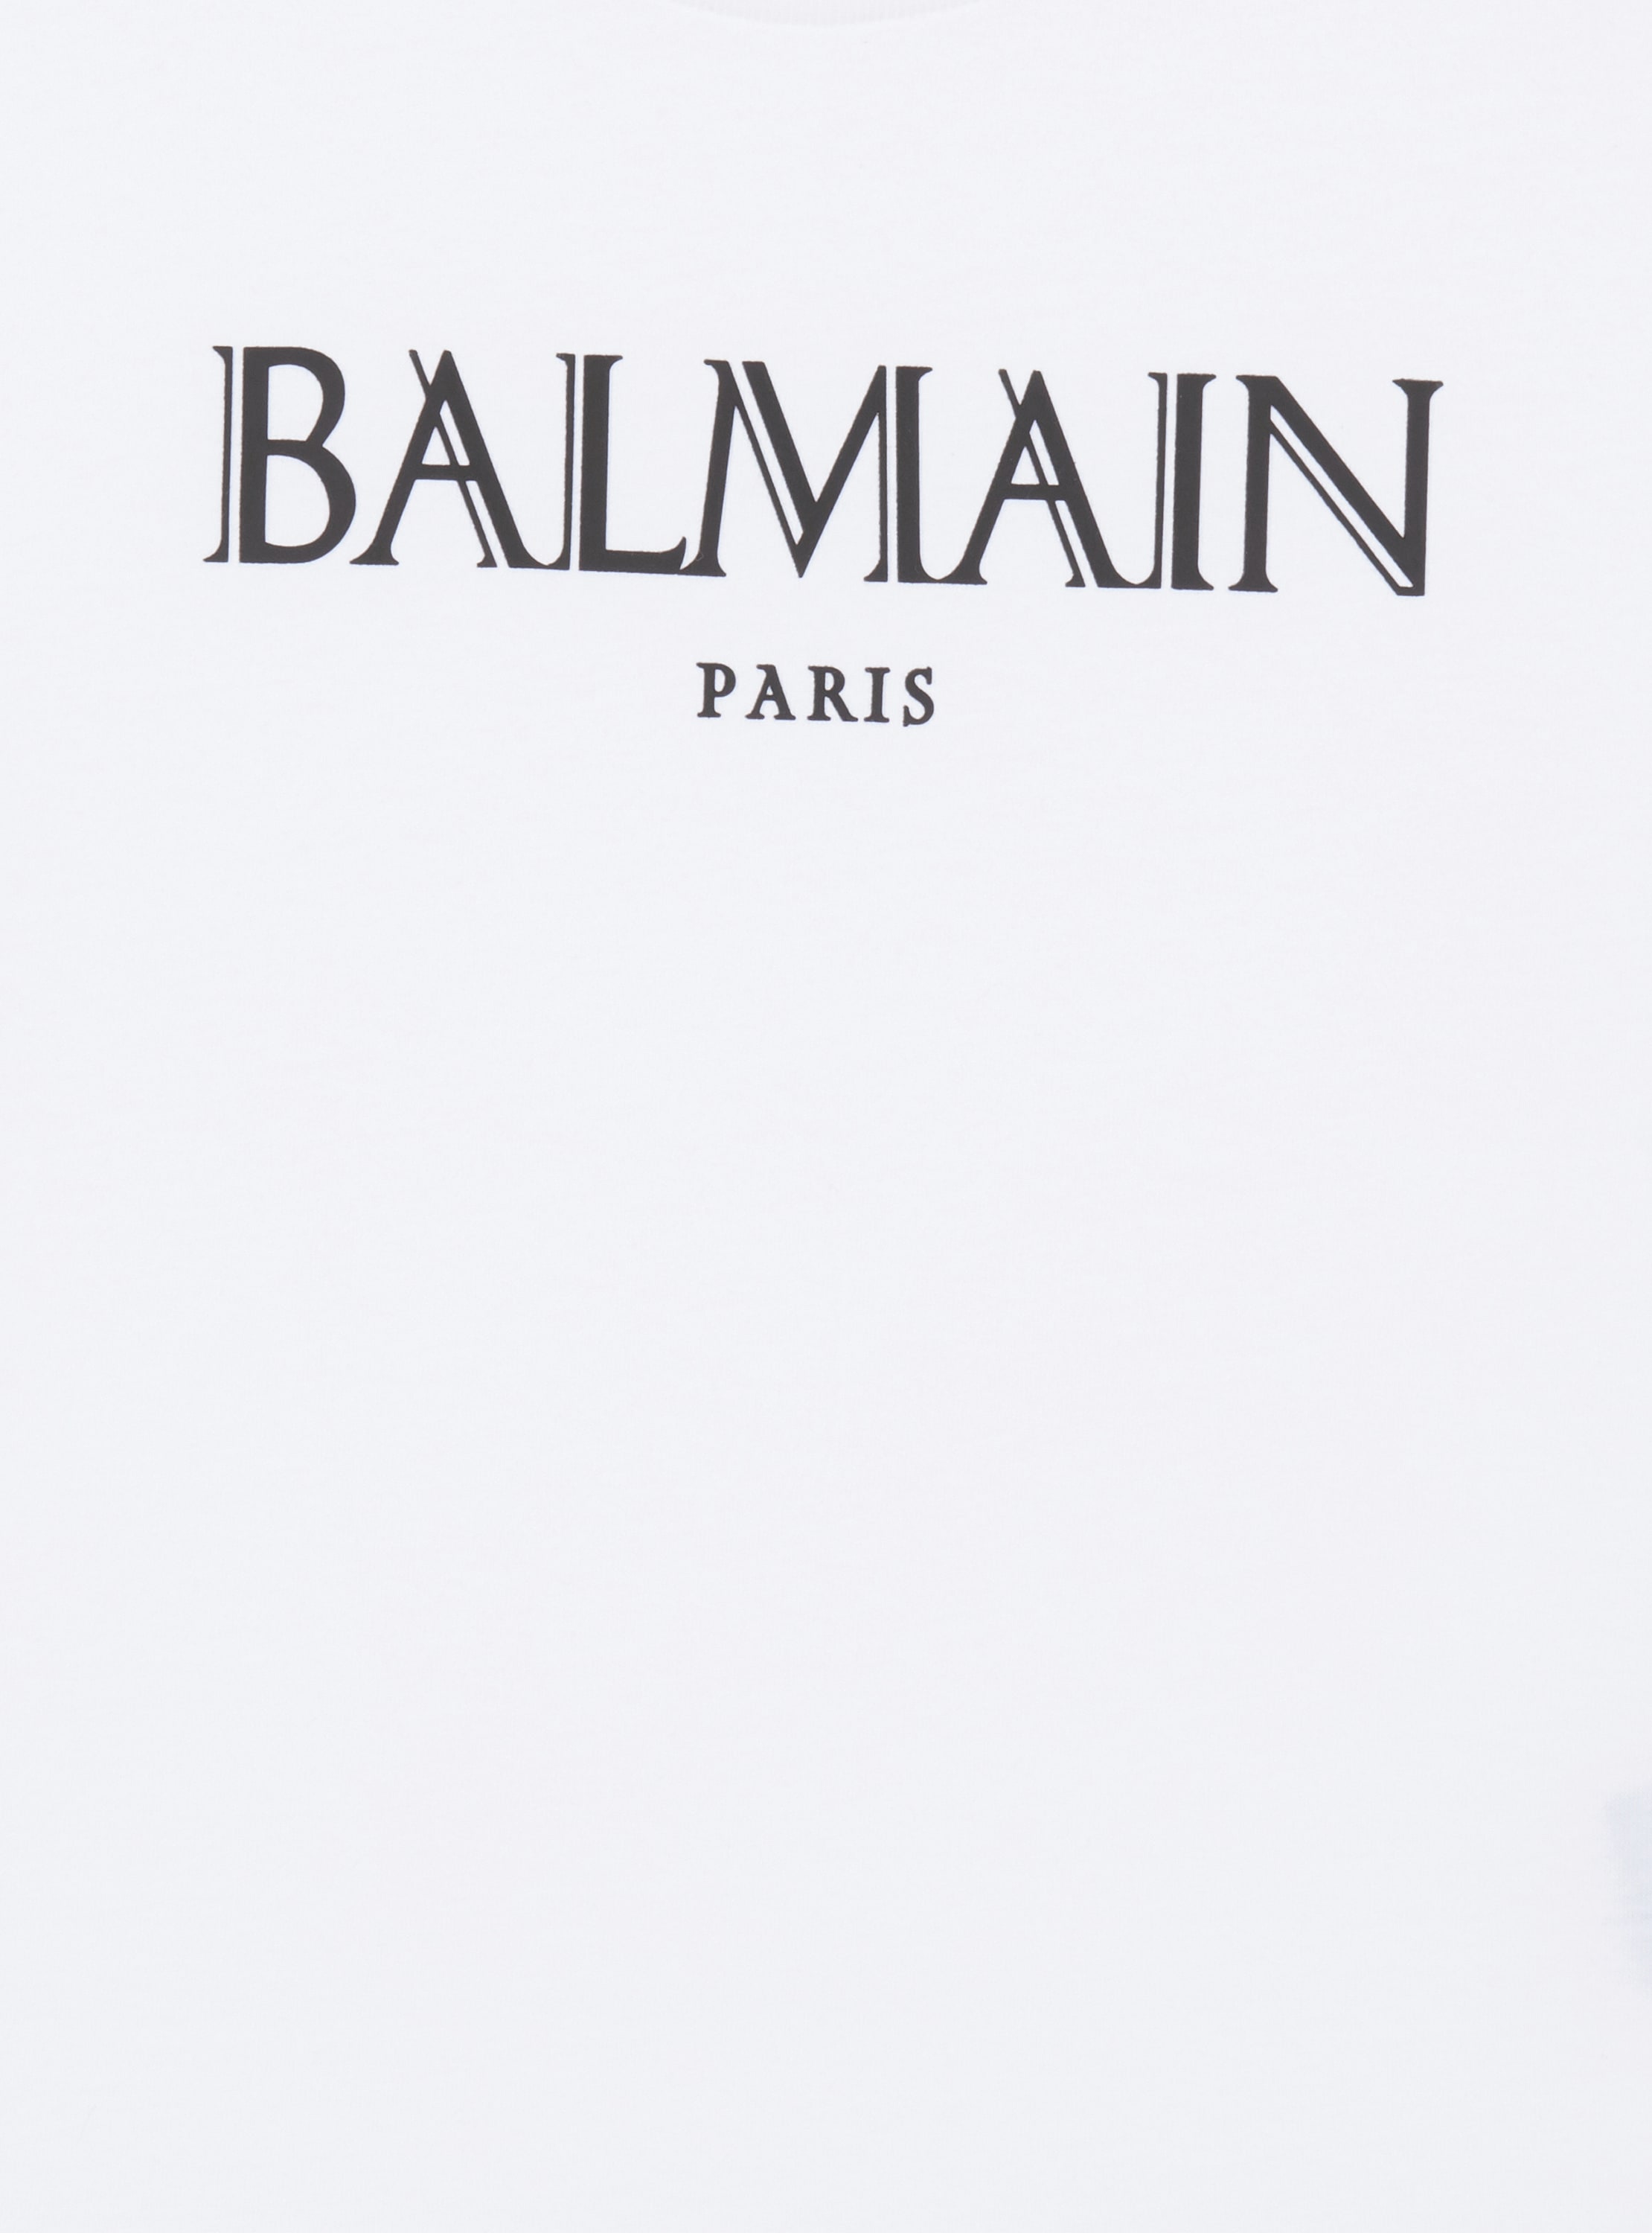 Balmain Romain T-Shirt